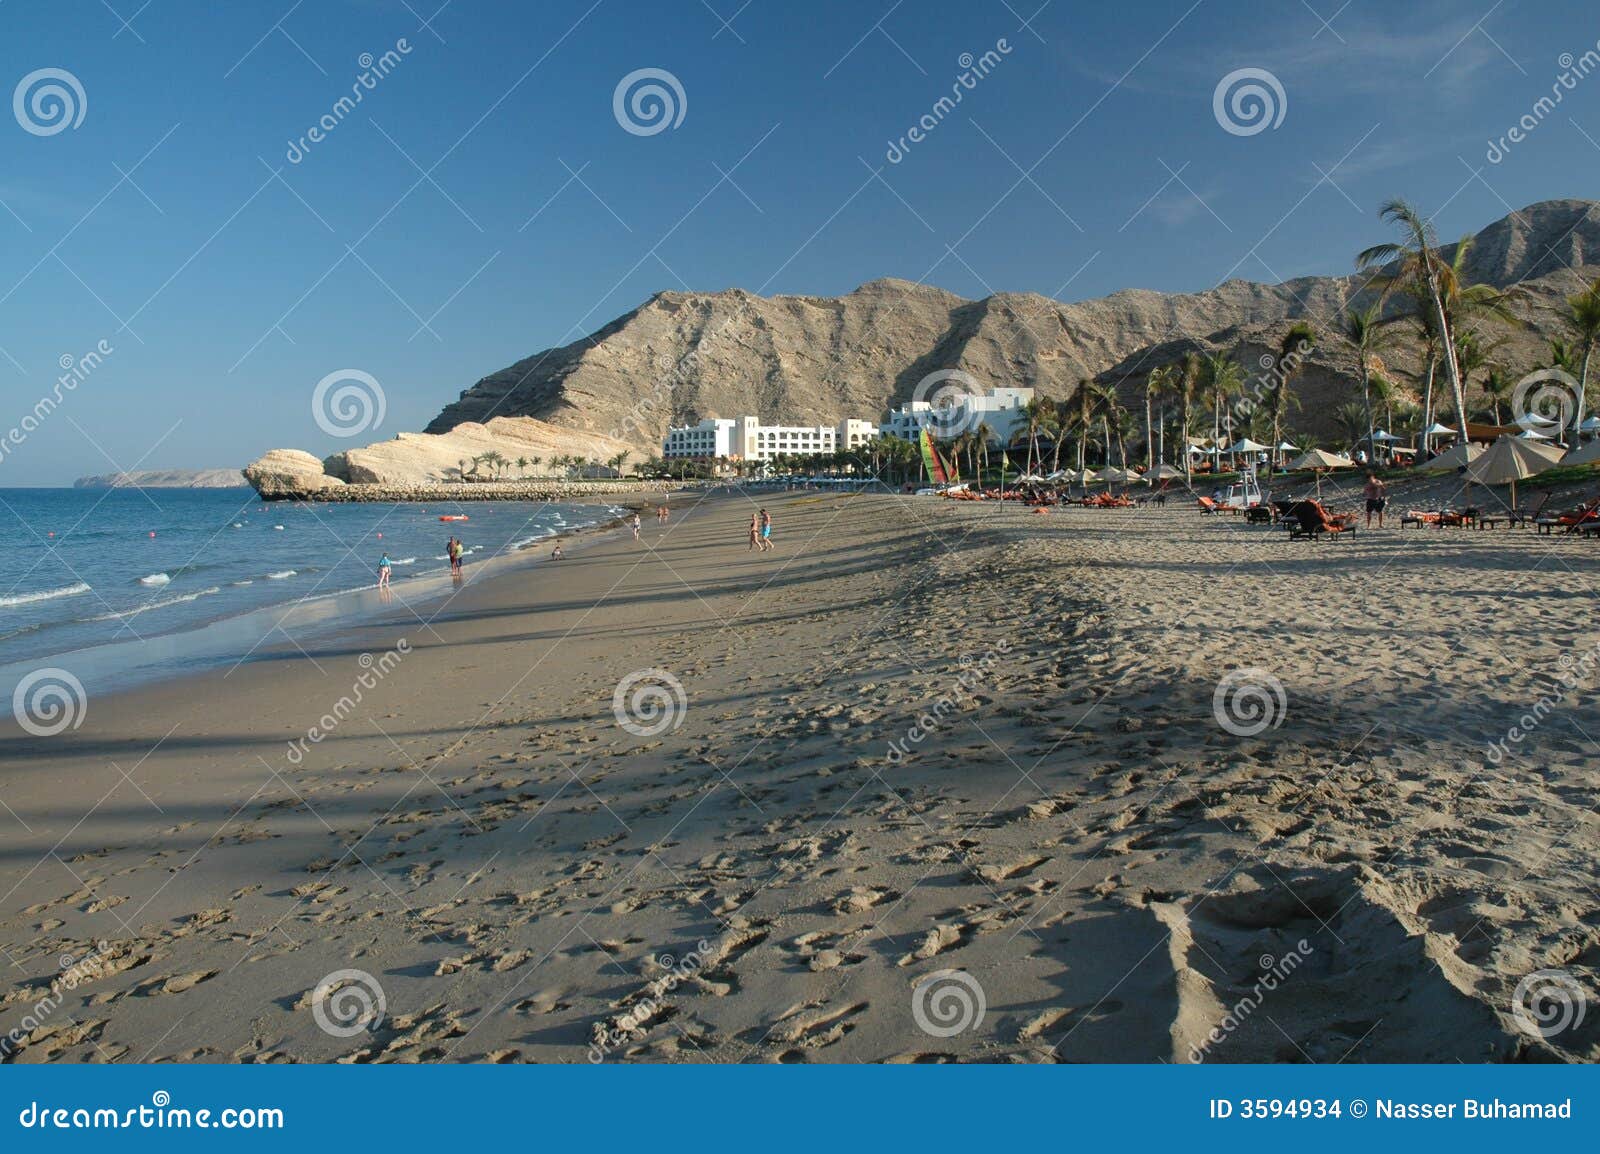 Oman zamieszkania. Oman plażowy sandy